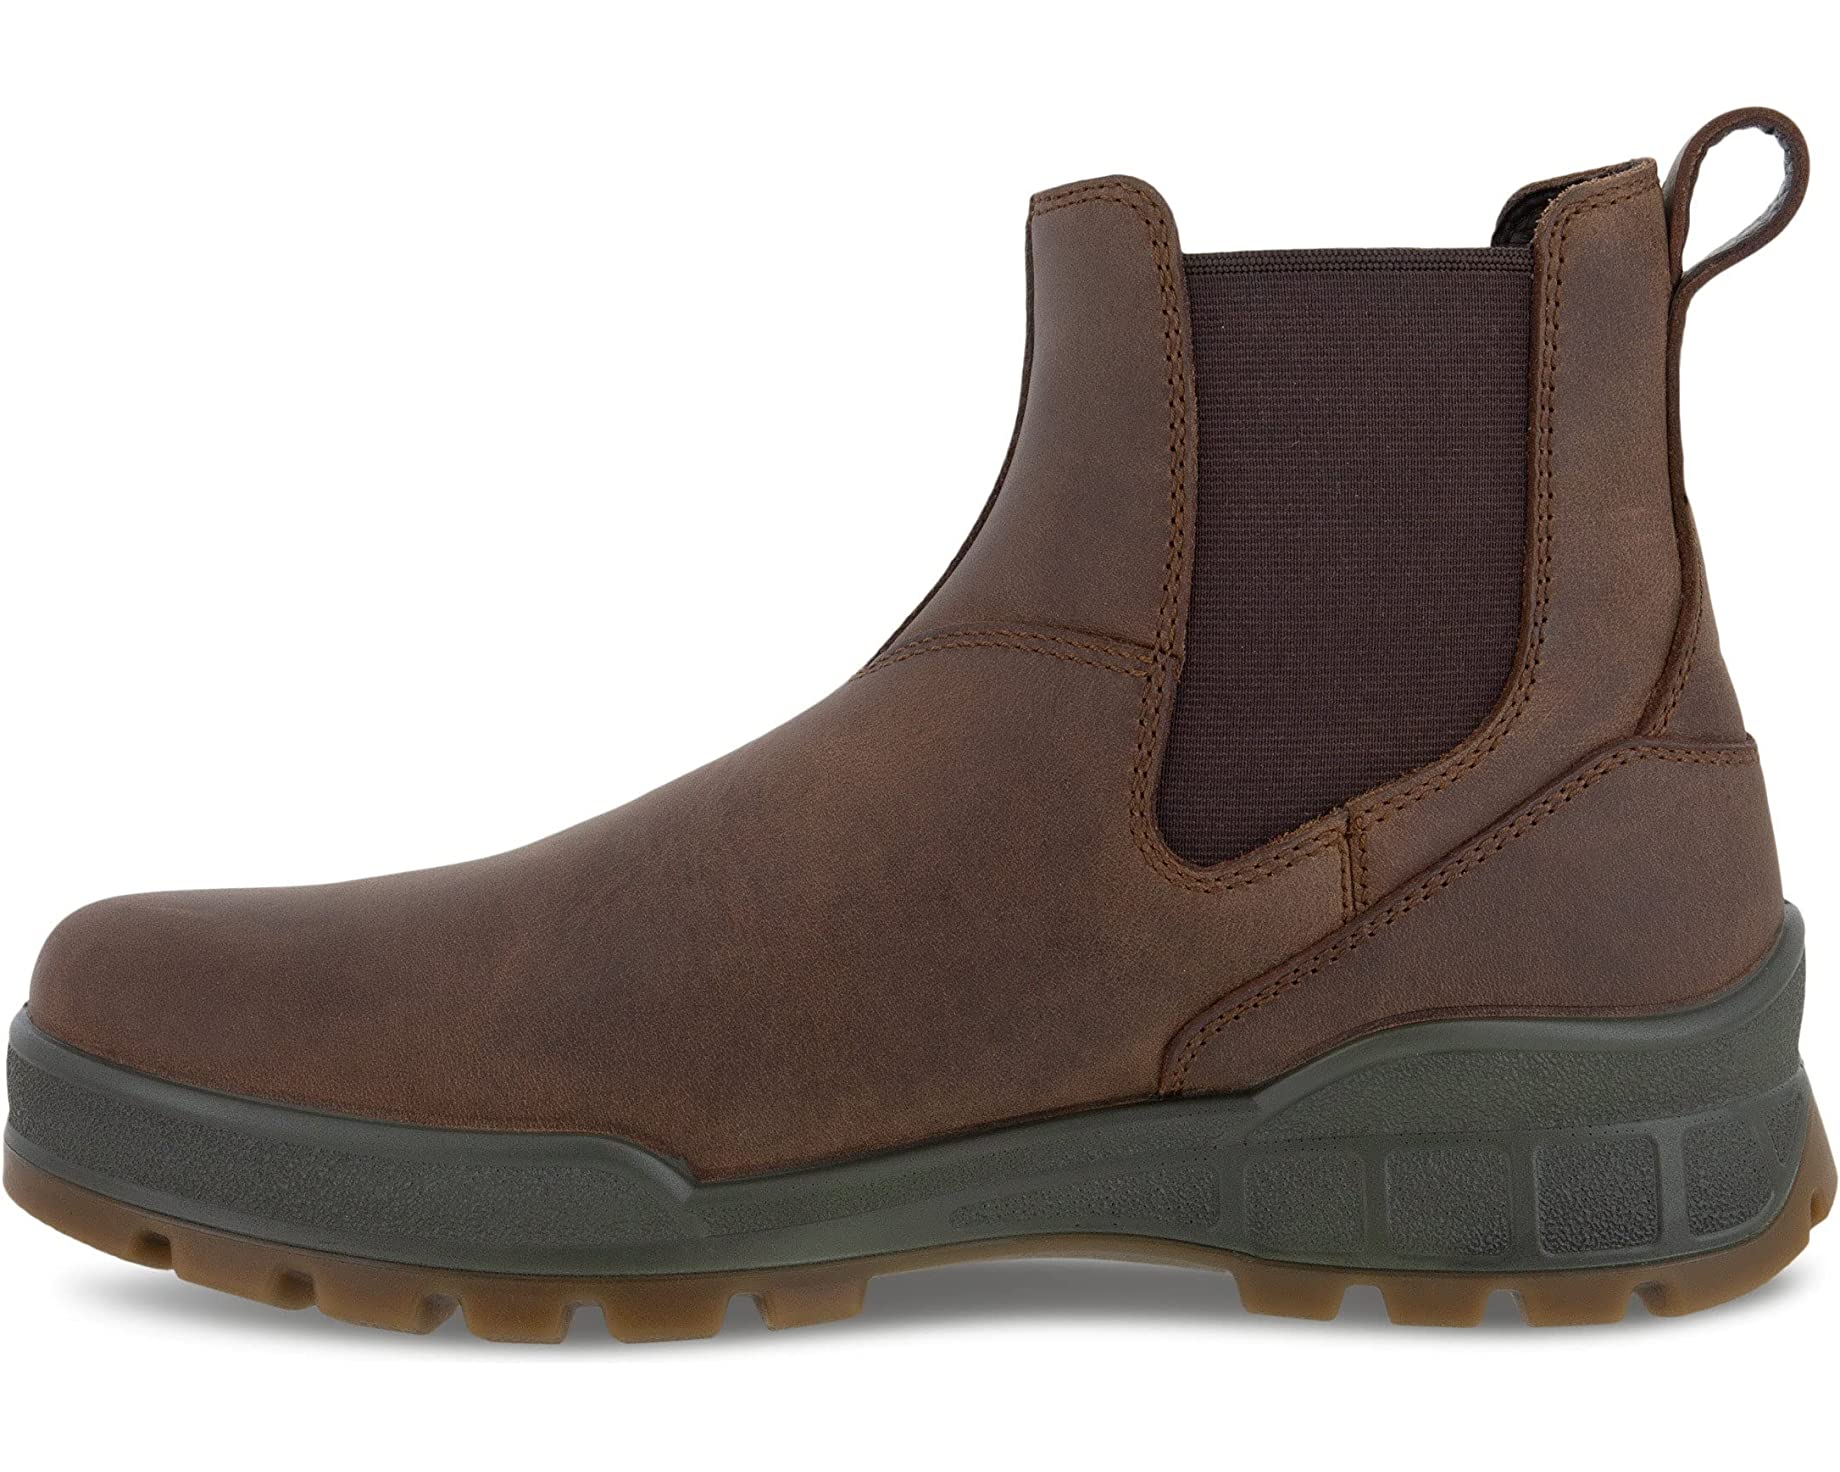 Ботинки Track 25 Hydromax Water Resistant Chelsea Boot ECCO, коричневый ботинки челси ecco размер 36 коричневый